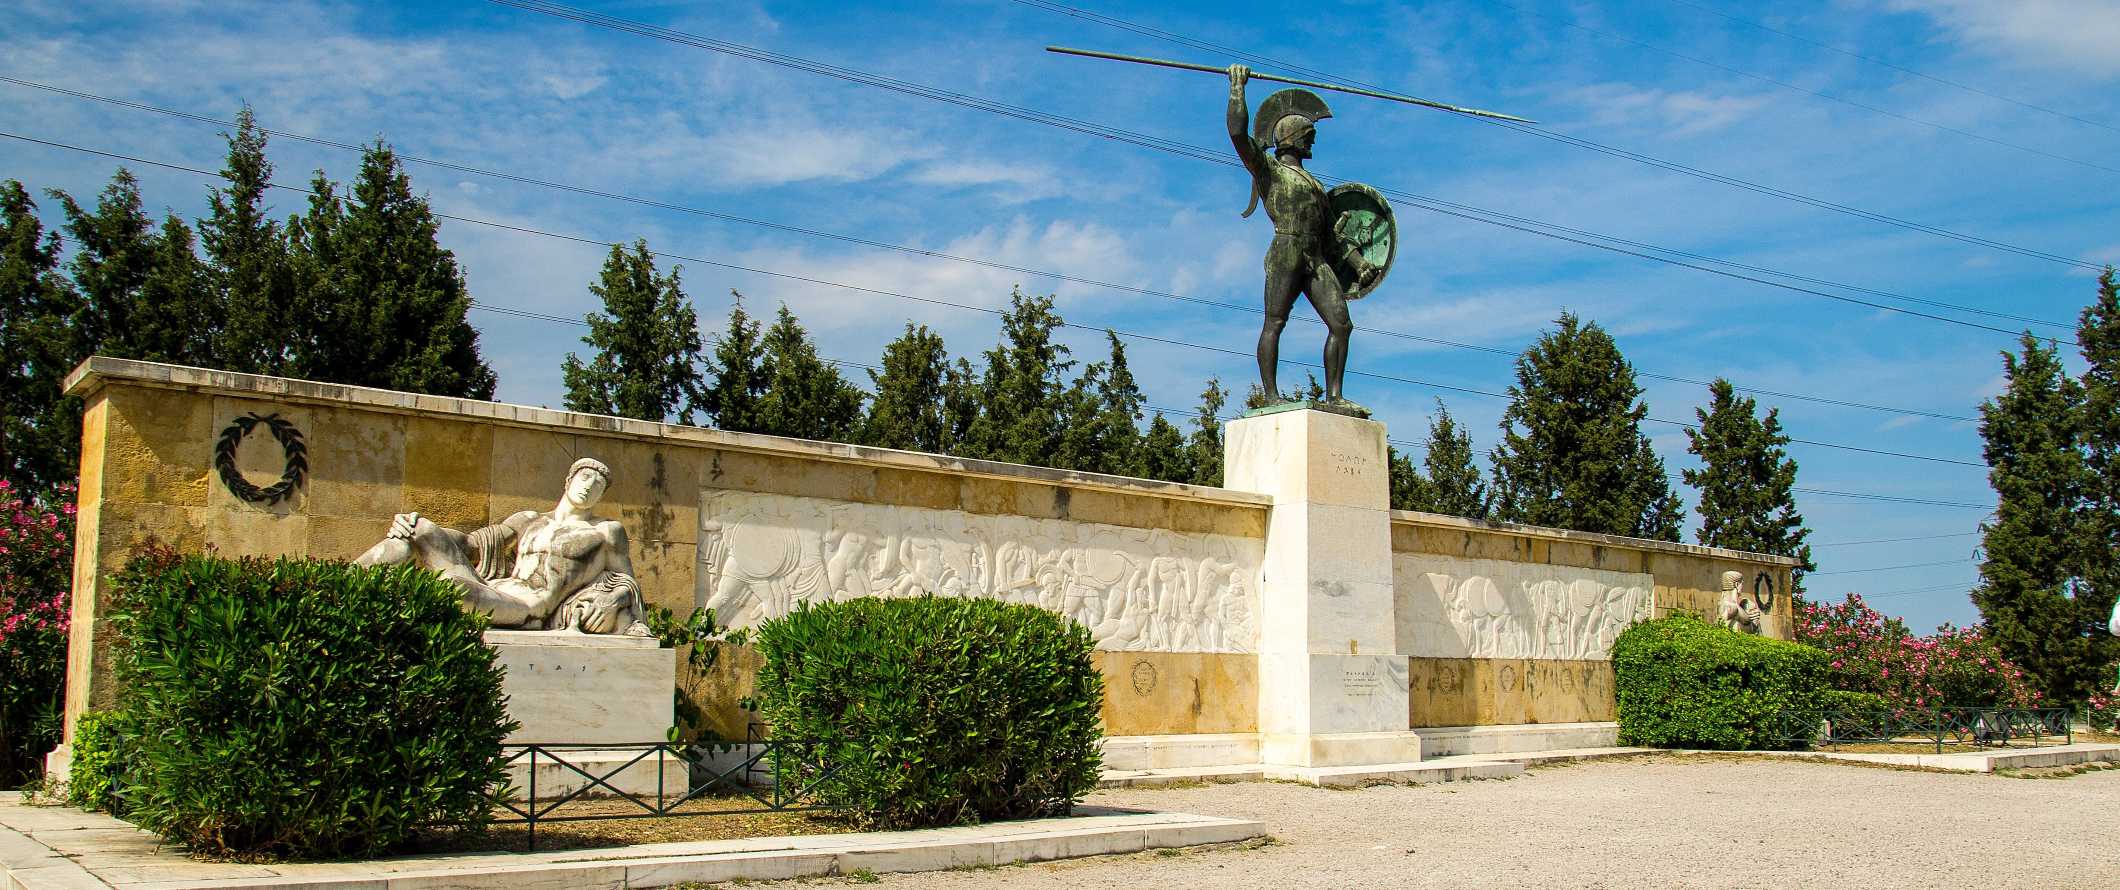 A estátua do rei Leonid em Sparta, Grécia.